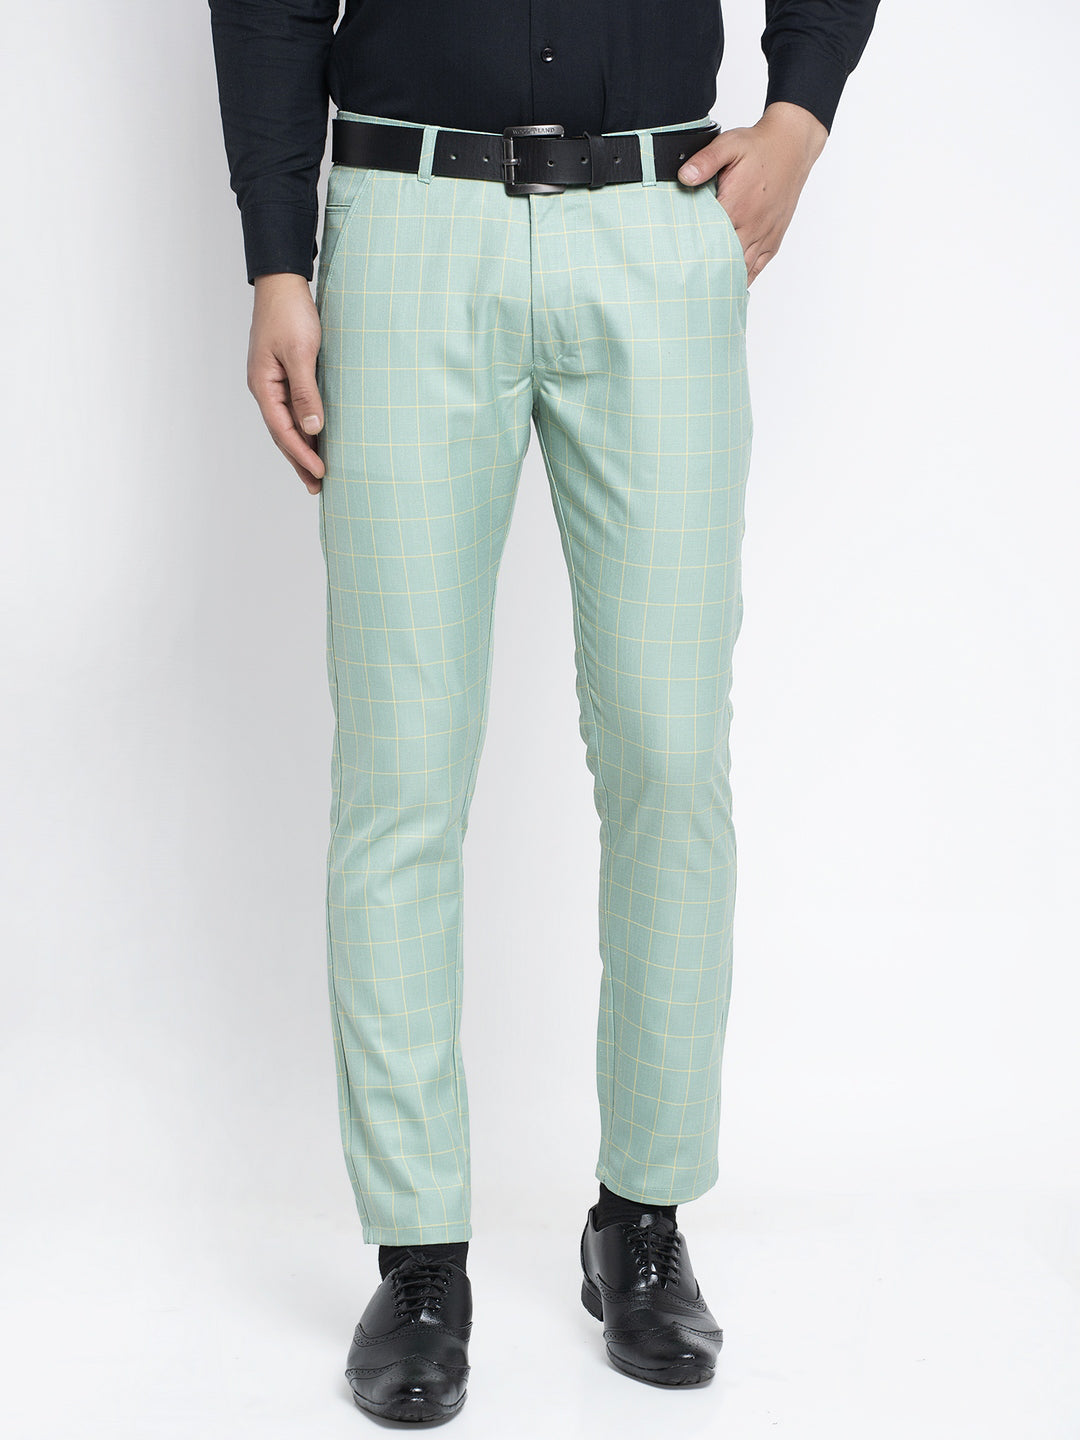 Slim Fit Business Pants Men | Men's Formal Trousers | 38 Size Pants |  Summer Pants - 2023 - Aliexpress